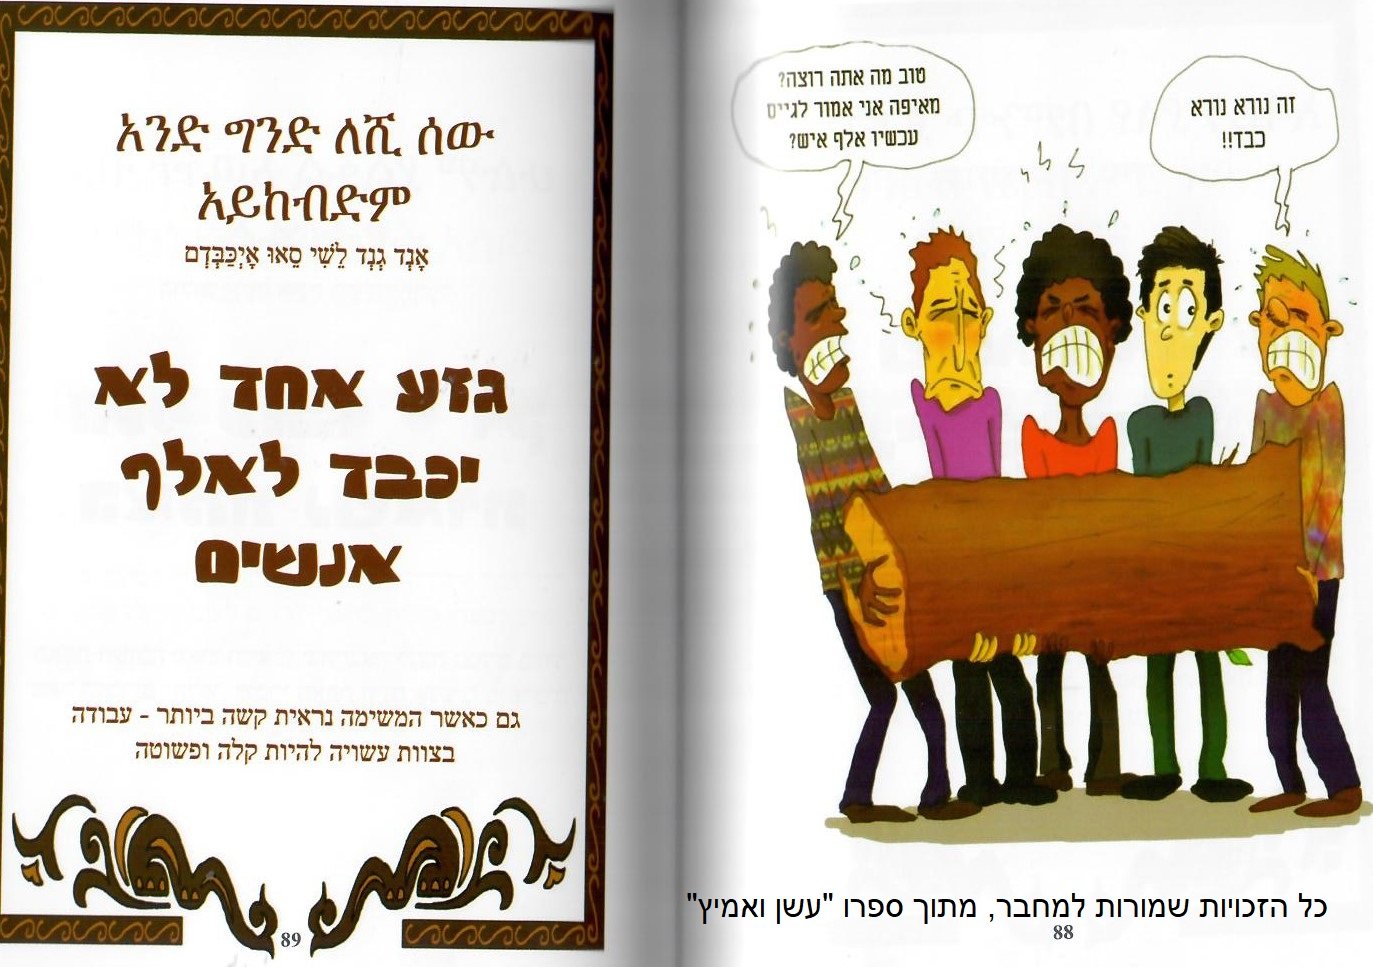 אמרות ופתגמים מתרבות יהודי אתיופיה בכלי TEAMIMG /רשת דרכא